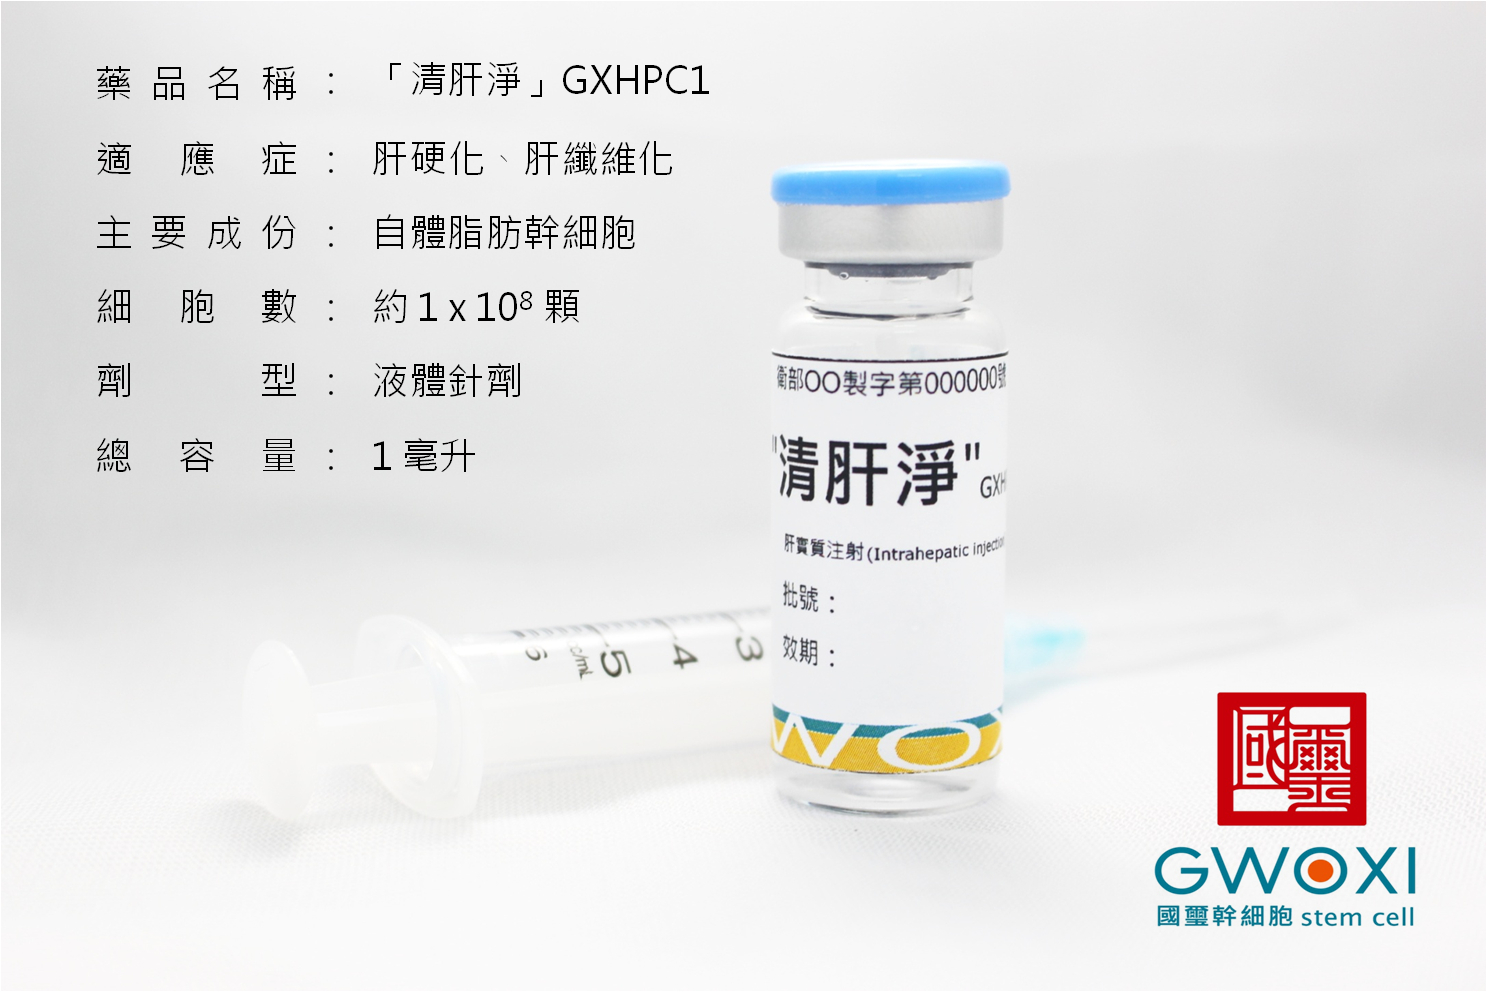 肝硬化幹細胞新藥-GXHPC1